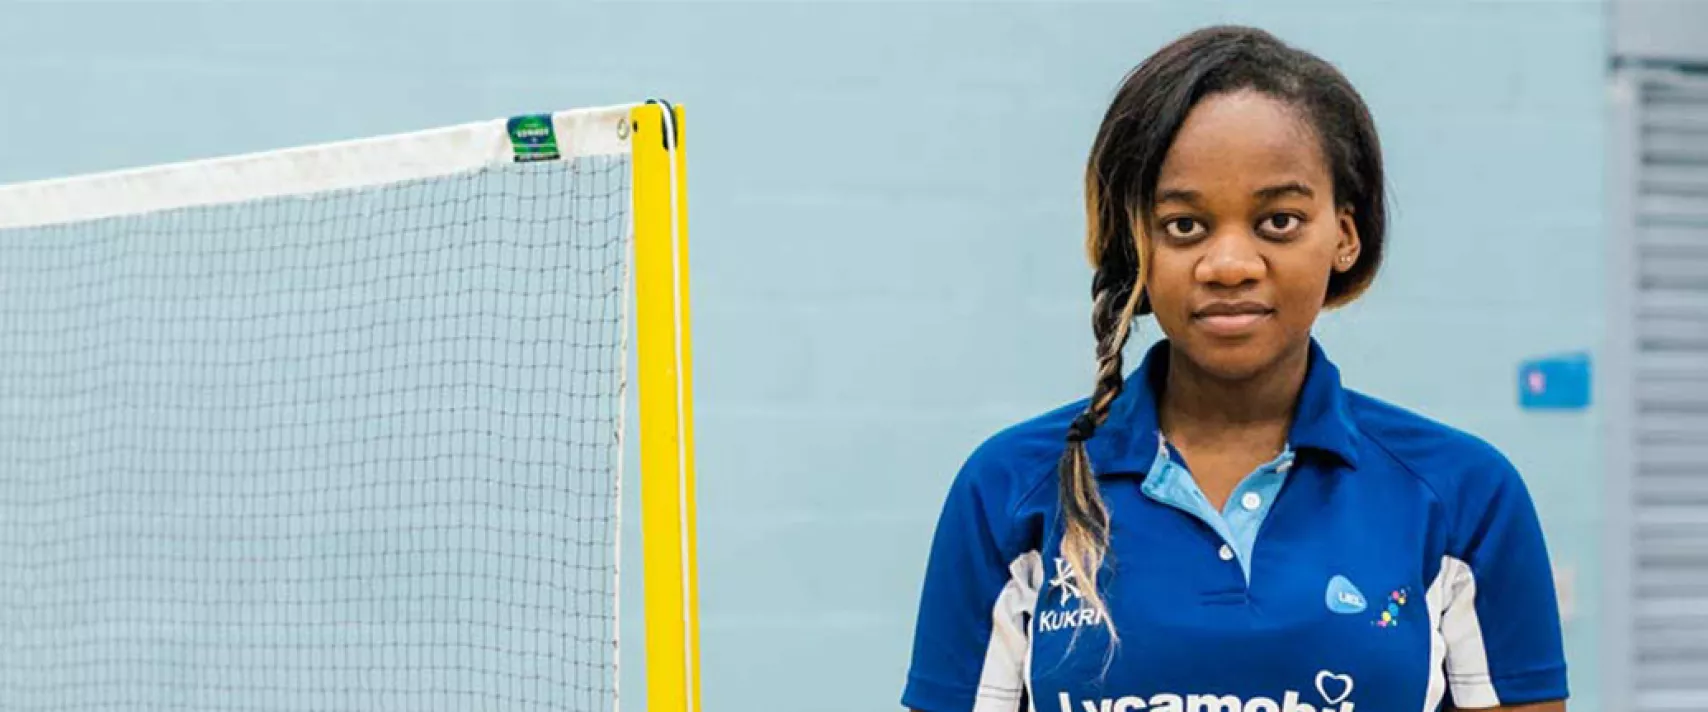 Badminton player Ruth Mwandumba